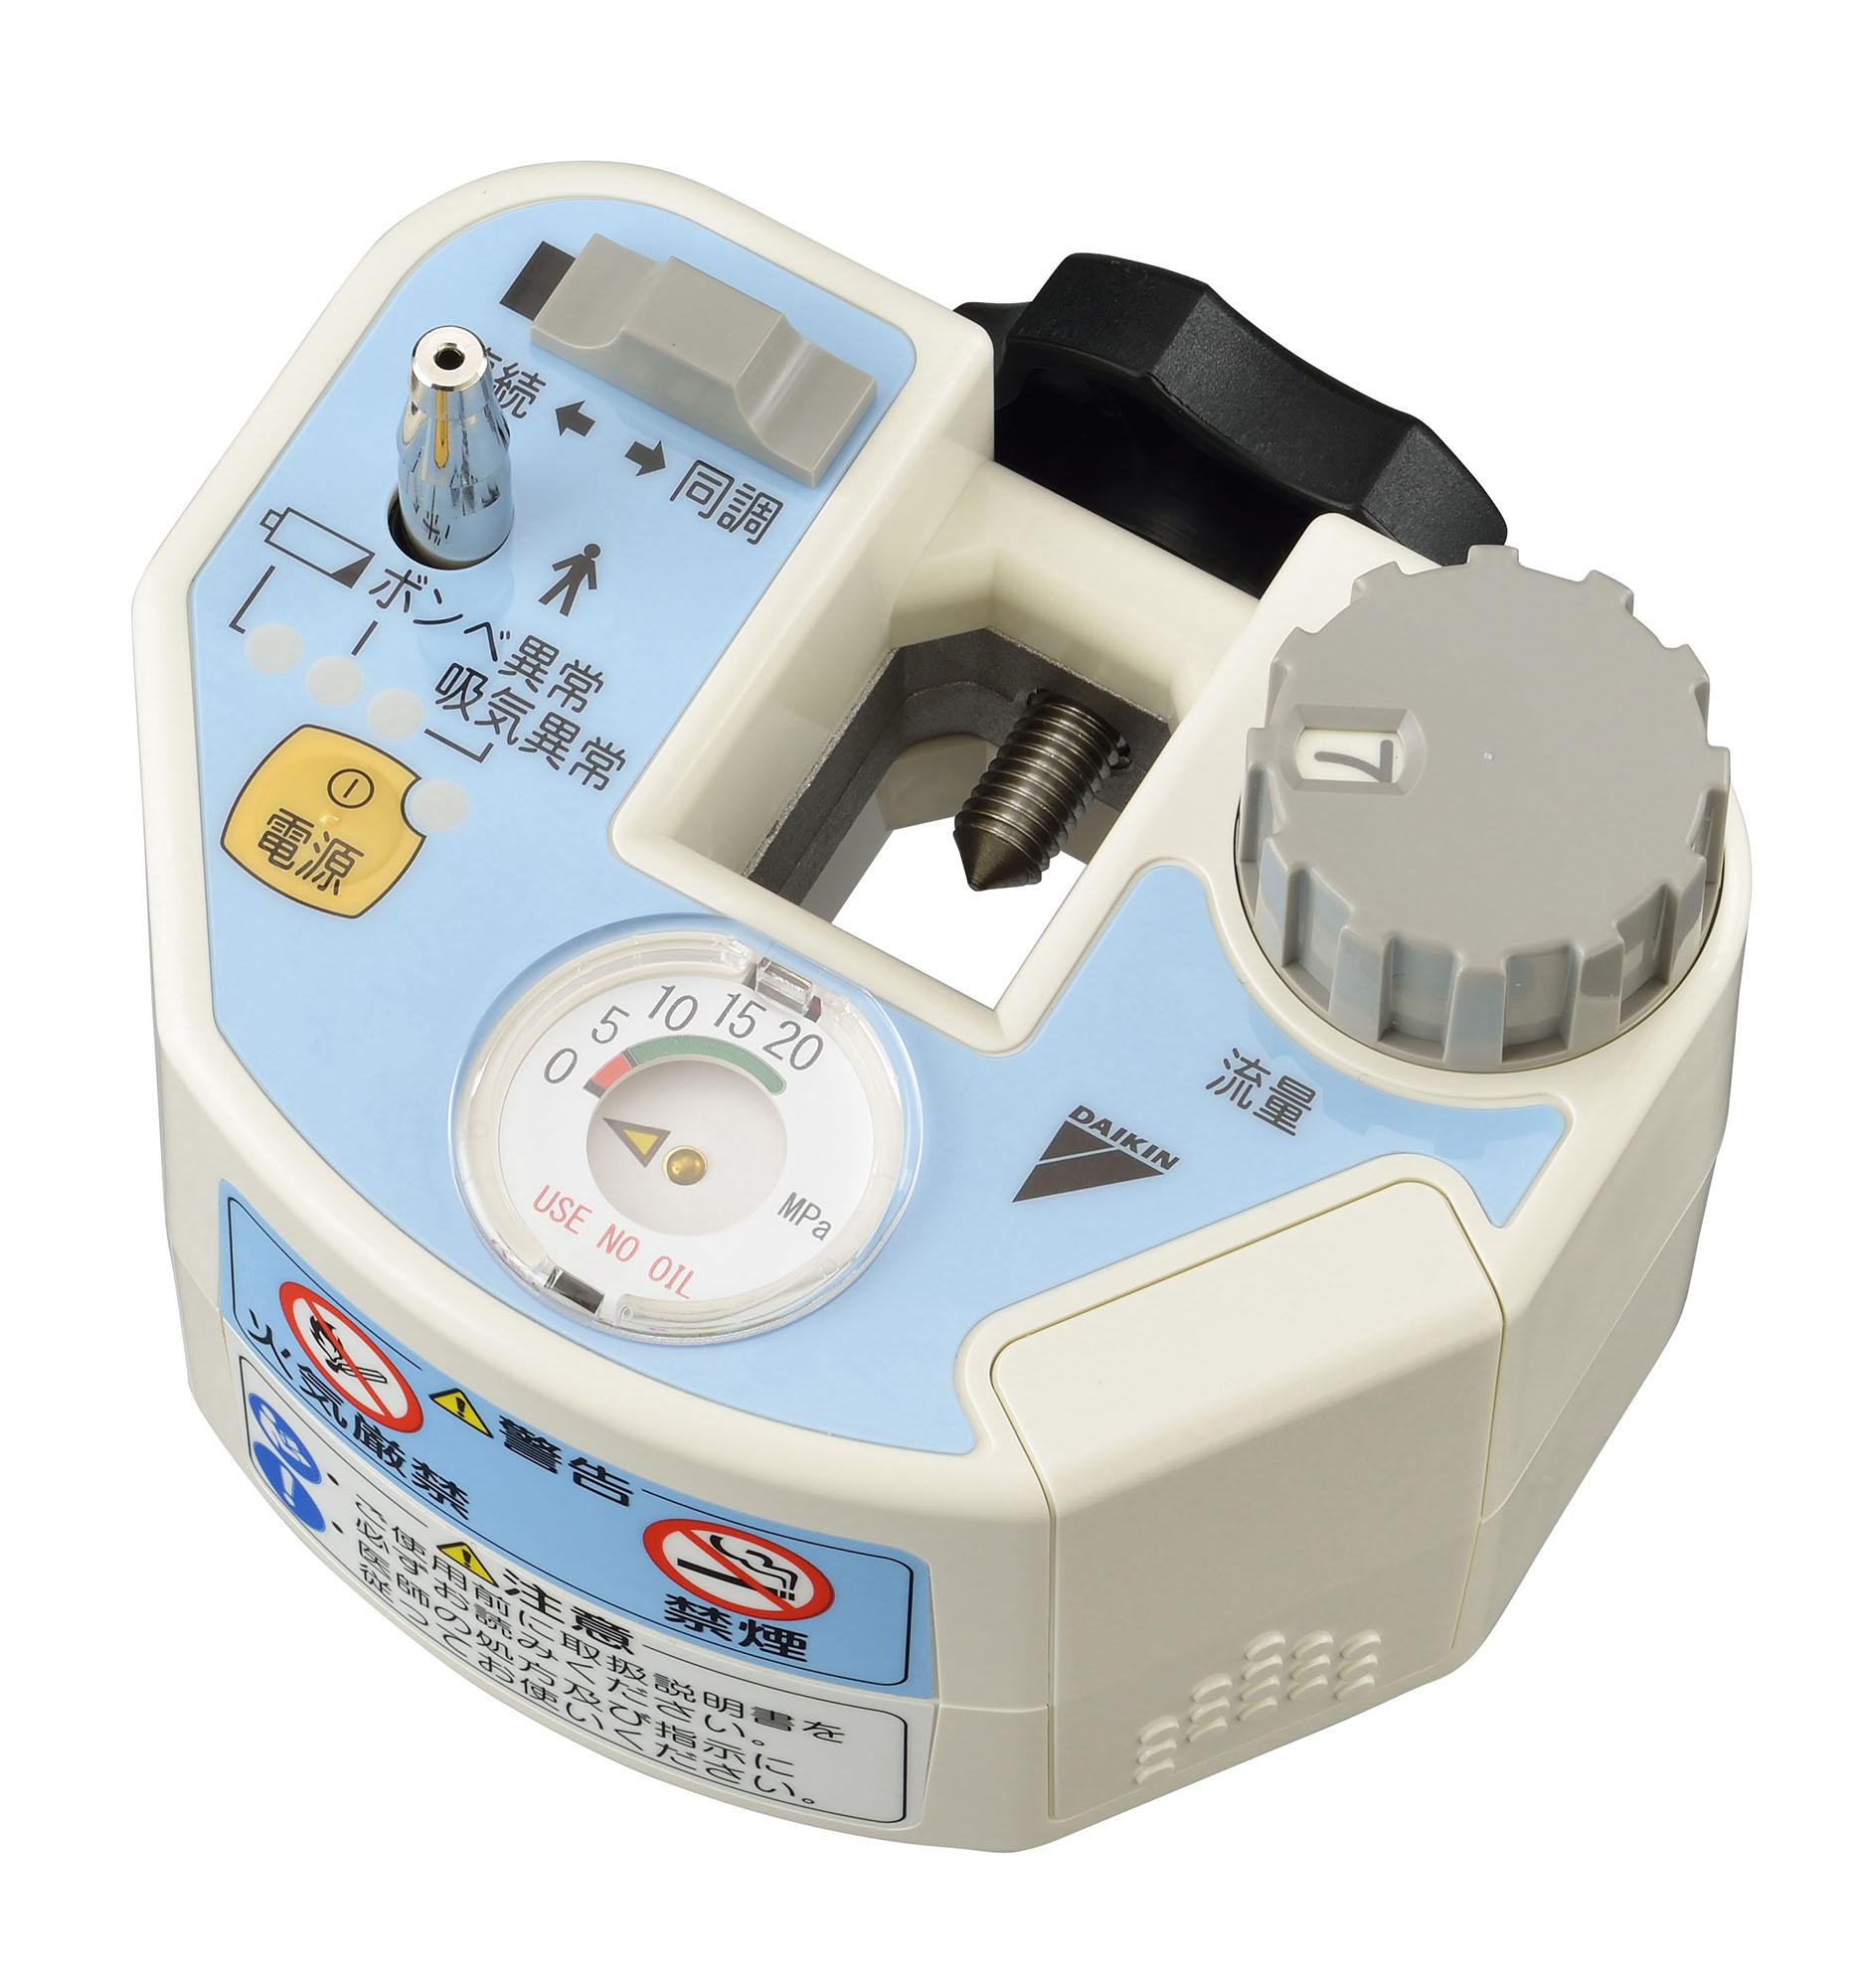 呼吸同調器 ライトテックDS15